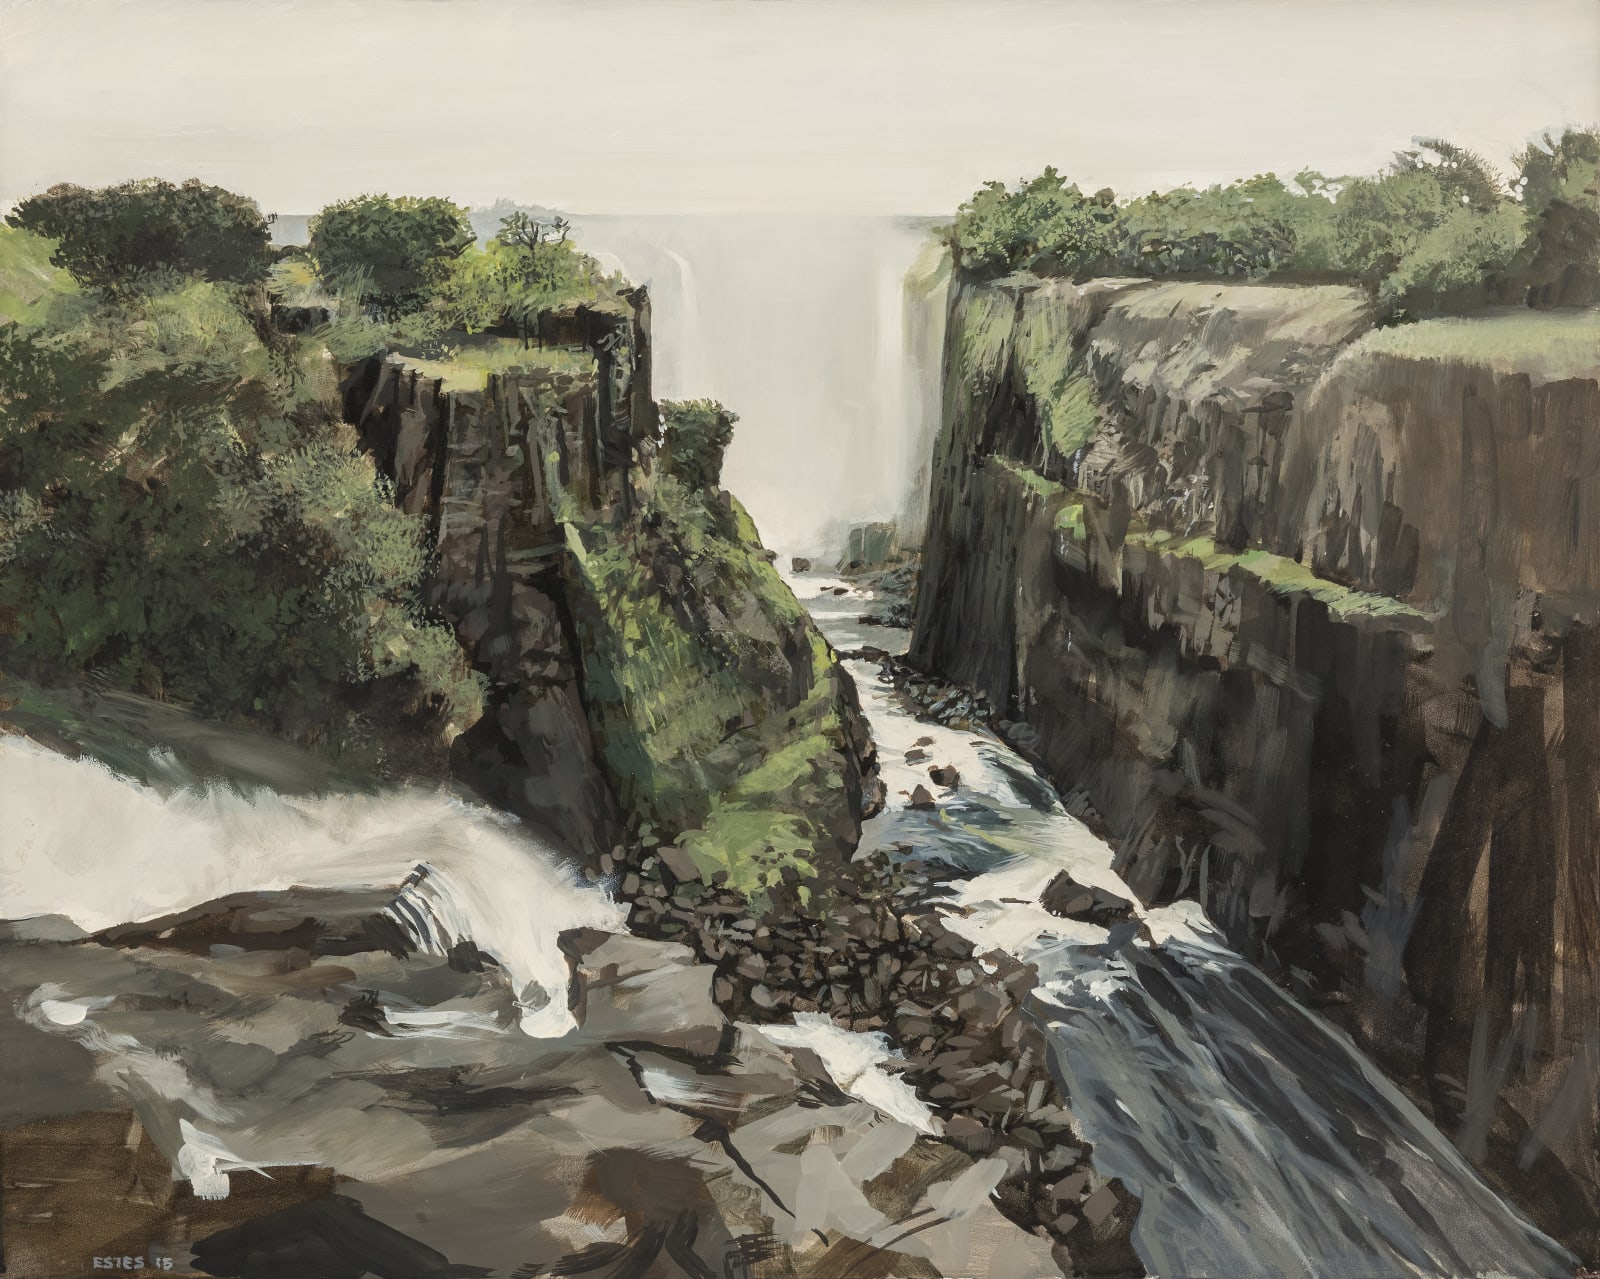 Richard Estes, Victoria Falls II, 2015